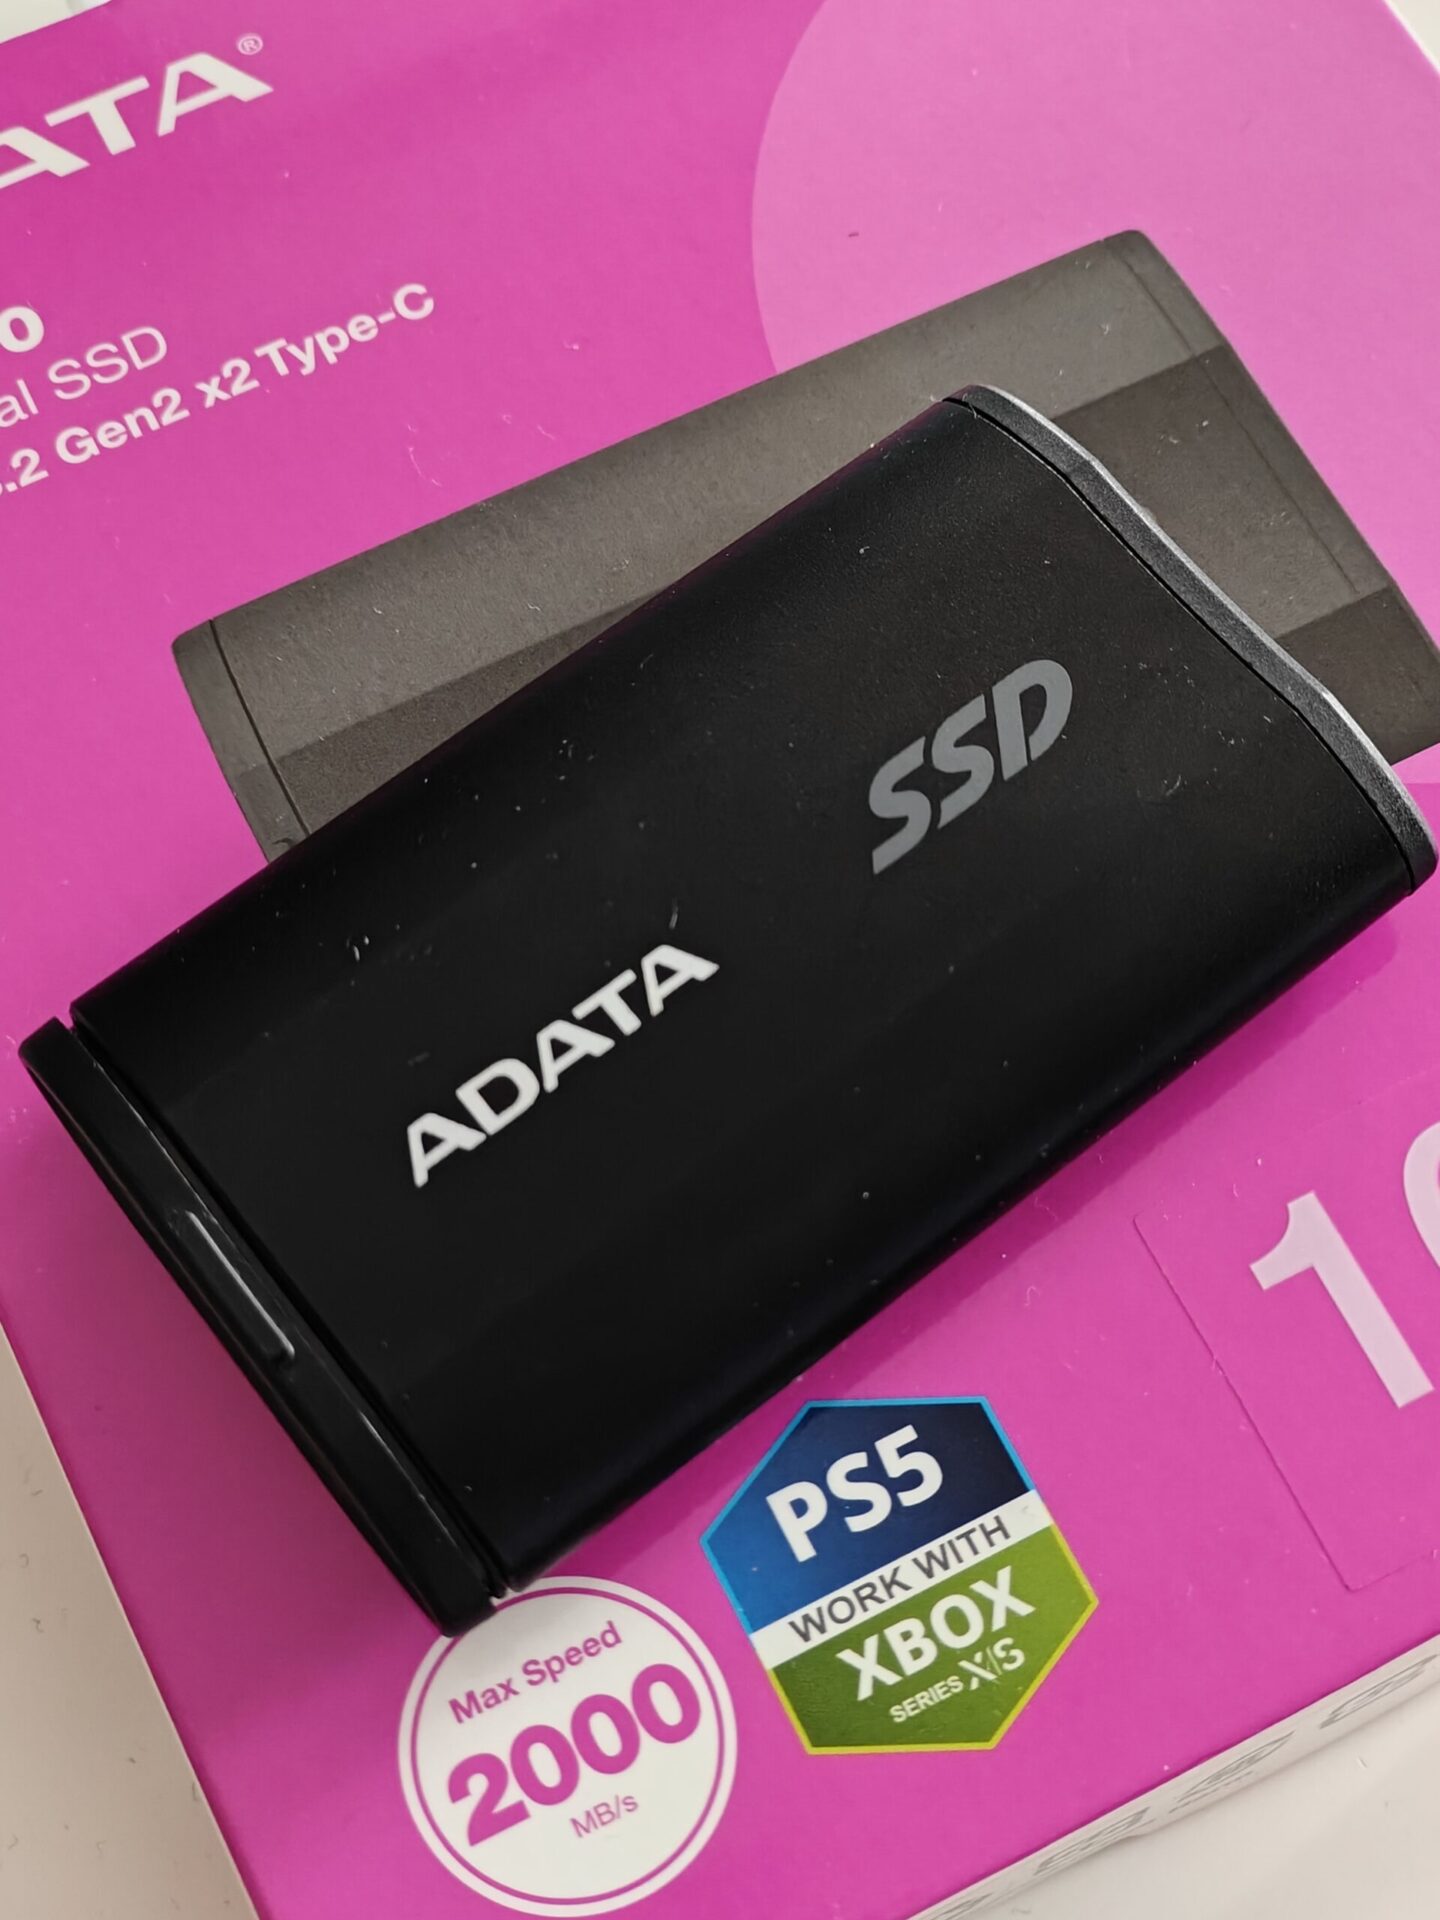 ADATA External SD810 1TB - Twój kieszonkowy przyjaciel - Recenzja